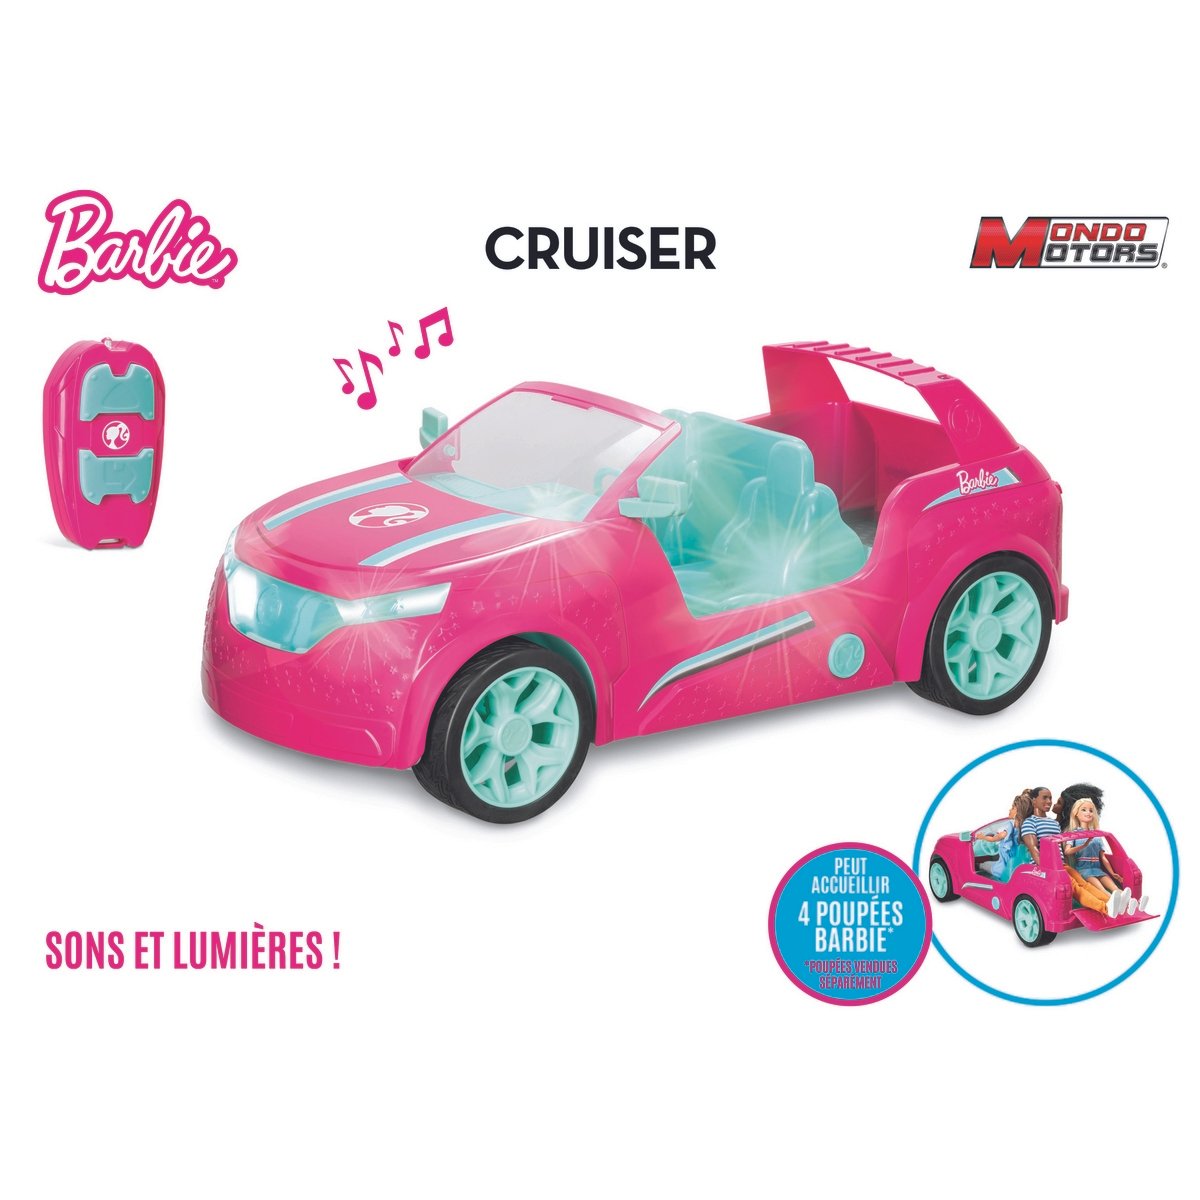 Barbie a désormais une voiture électrique… grandeur nature